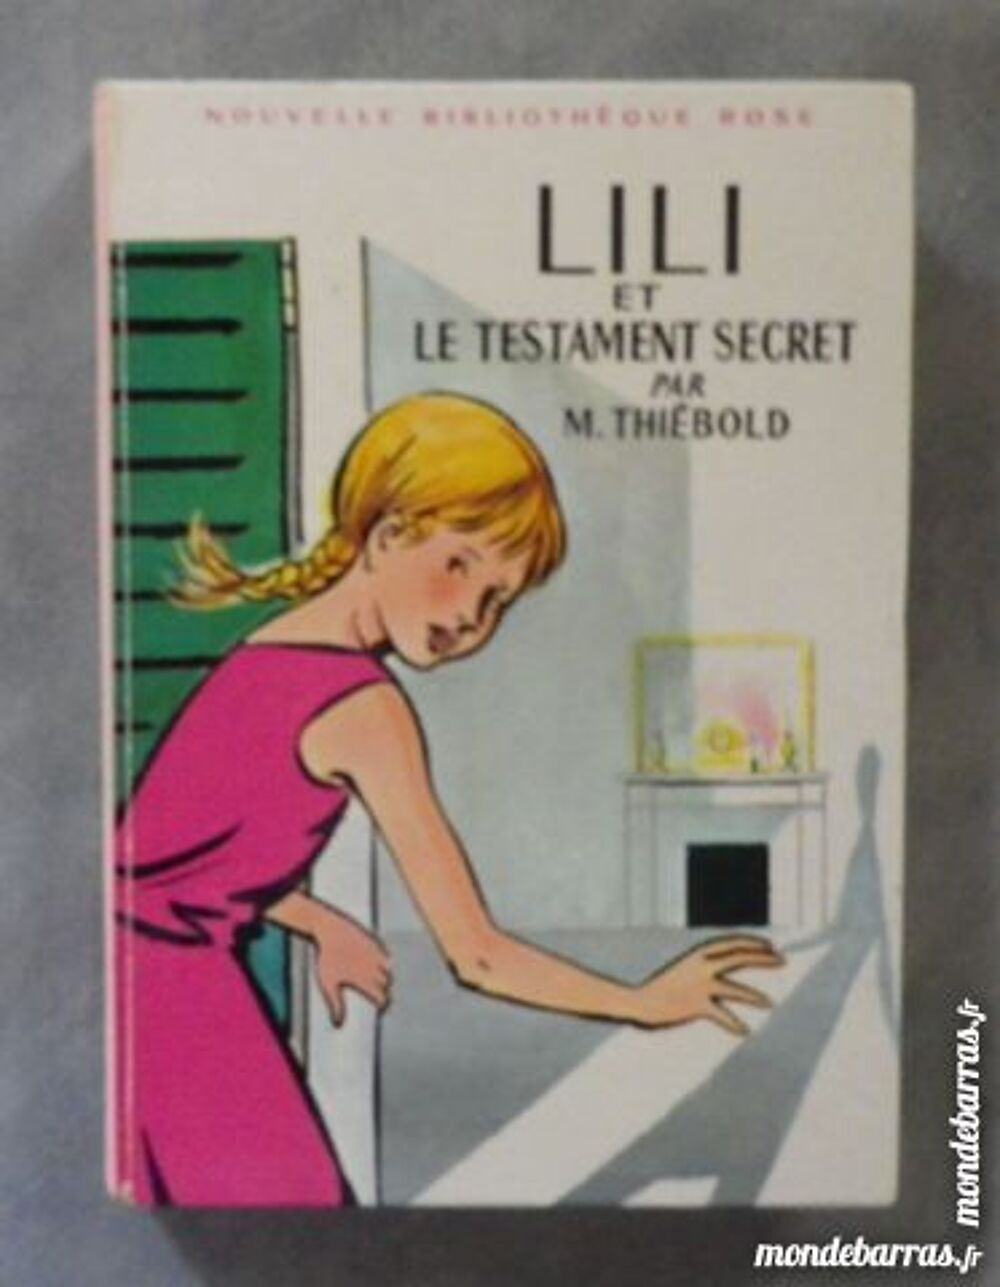 LILI ET LE TESTAMENT SECRET BIBLIO ROSE 269 1968 Livres et BD